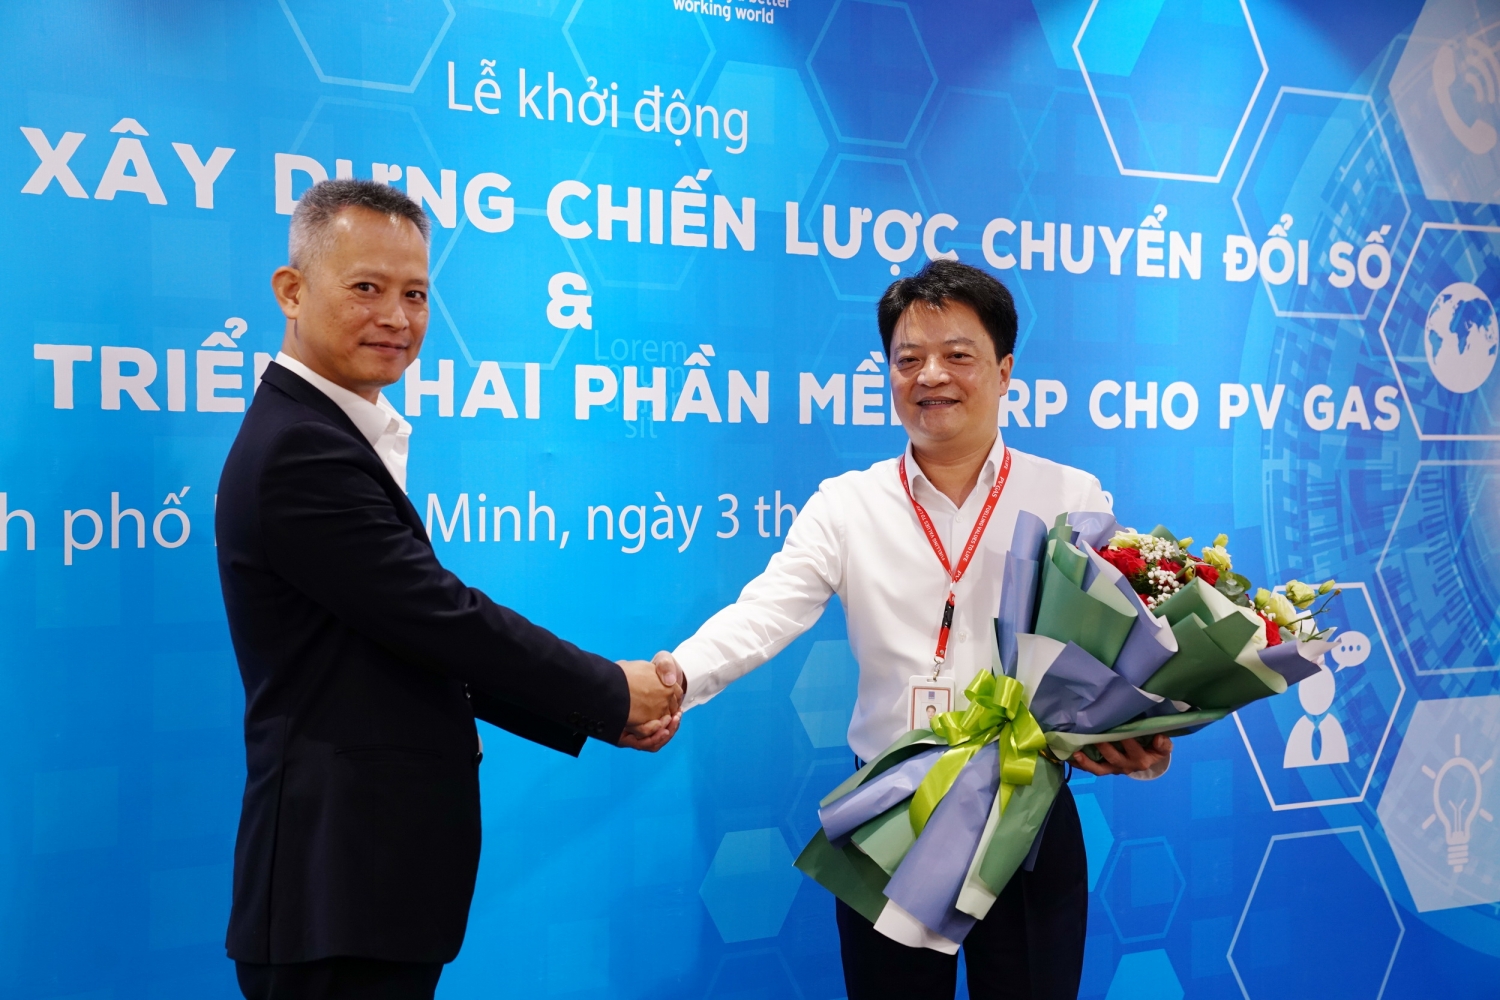 Tổng giám đốc PV GAS Hoàng Văn Quang và Phó Tổng giám đốc EY Phan Đằng Chương trao hoa lưu niệm trong nghi thức khởi động dự án